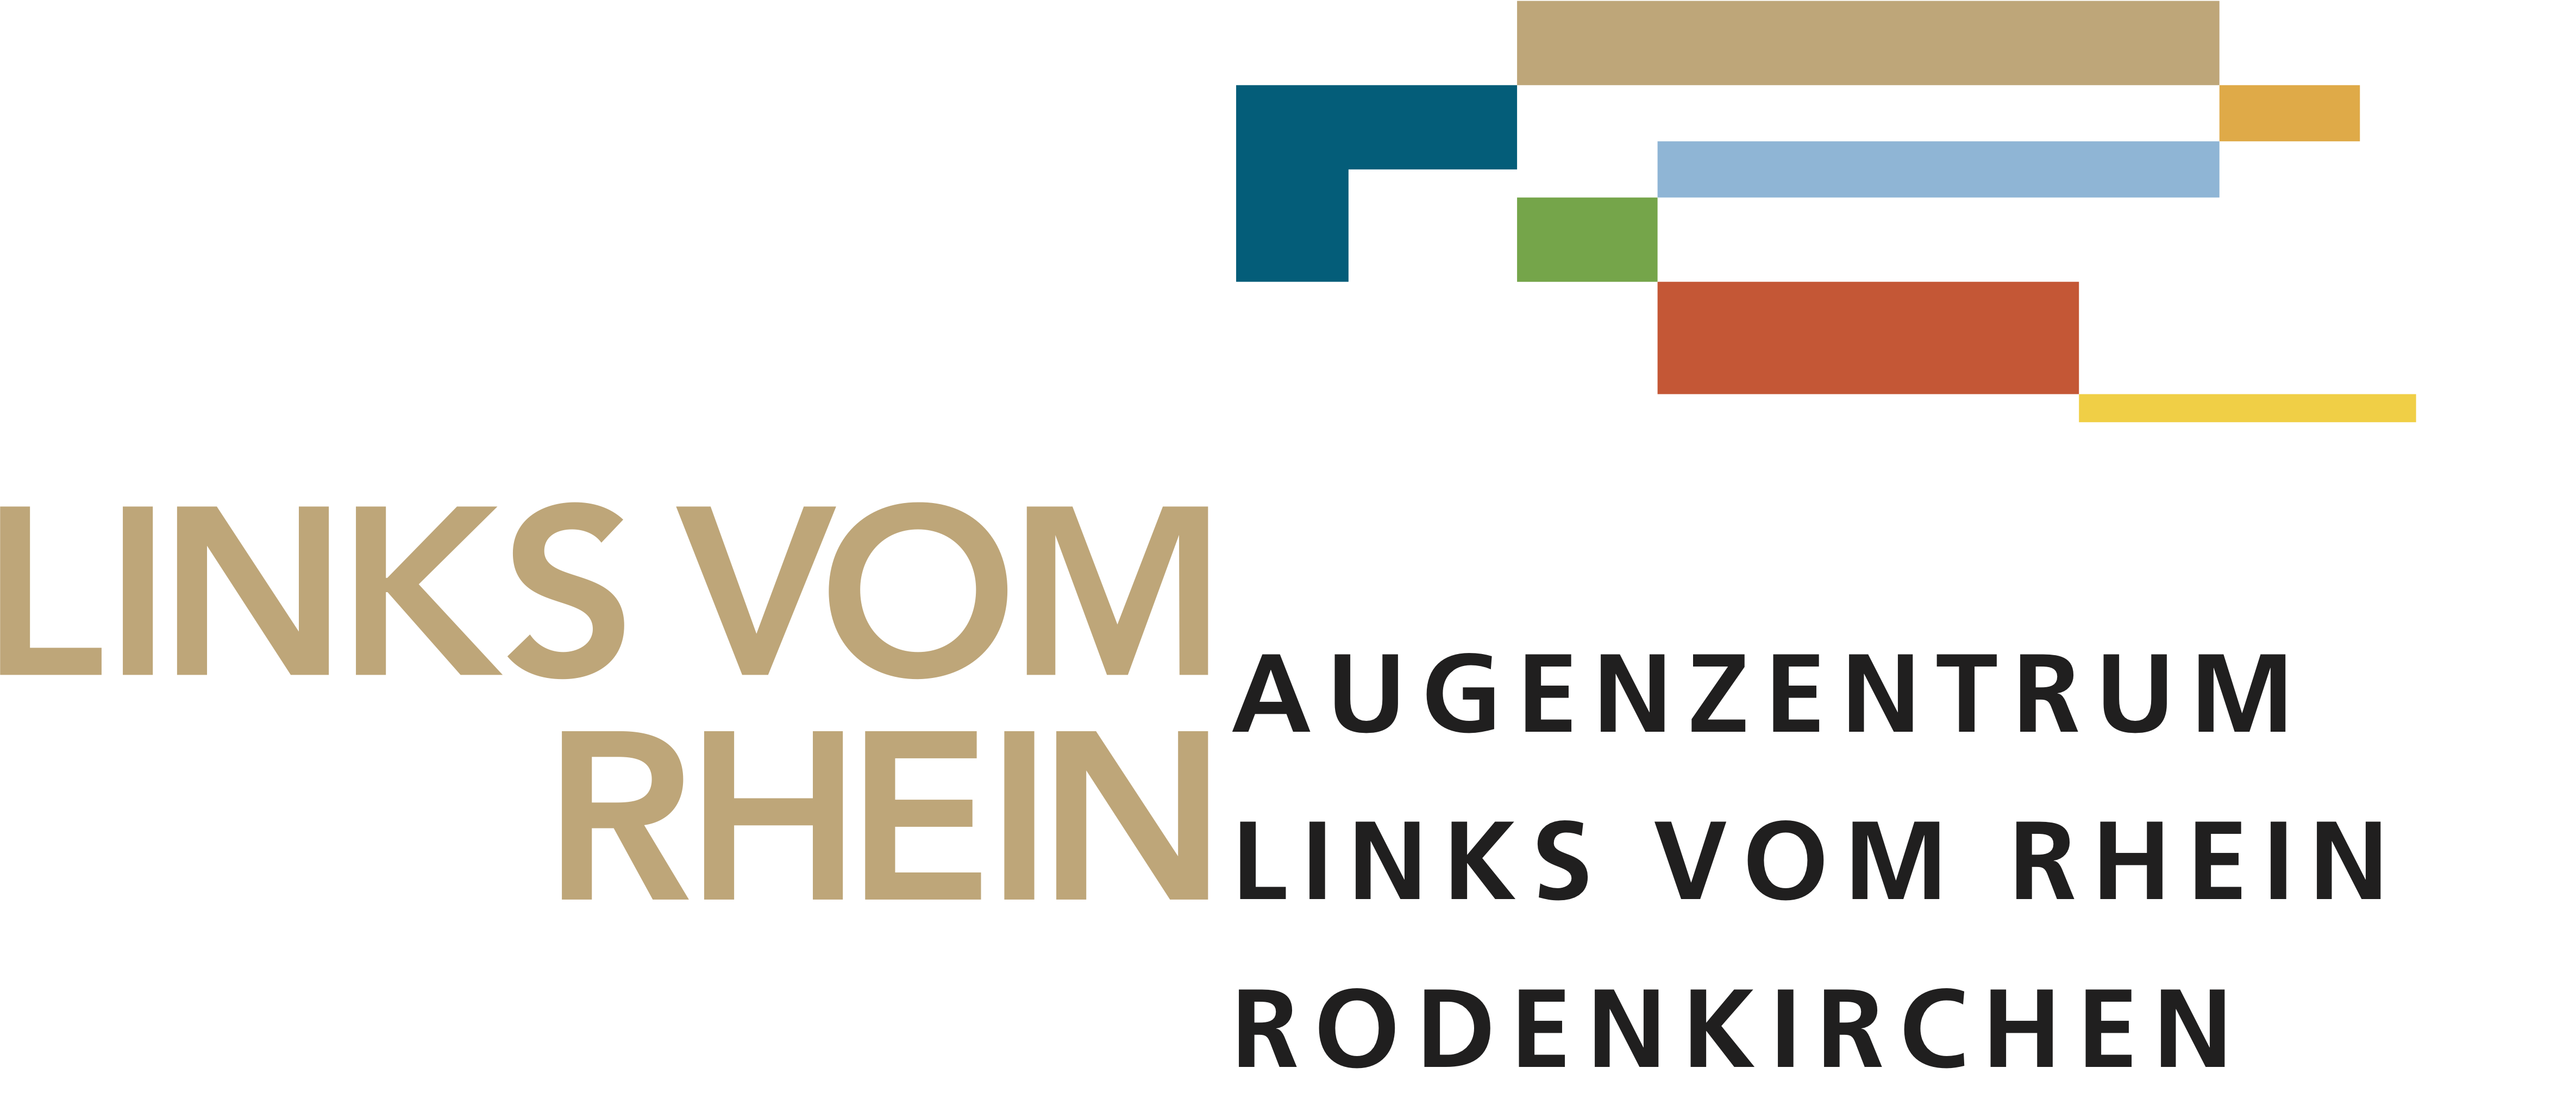 //carekom.de/wp-content/uploads/2018/11/Augenzentrum-LInks-vom-Rhein.png